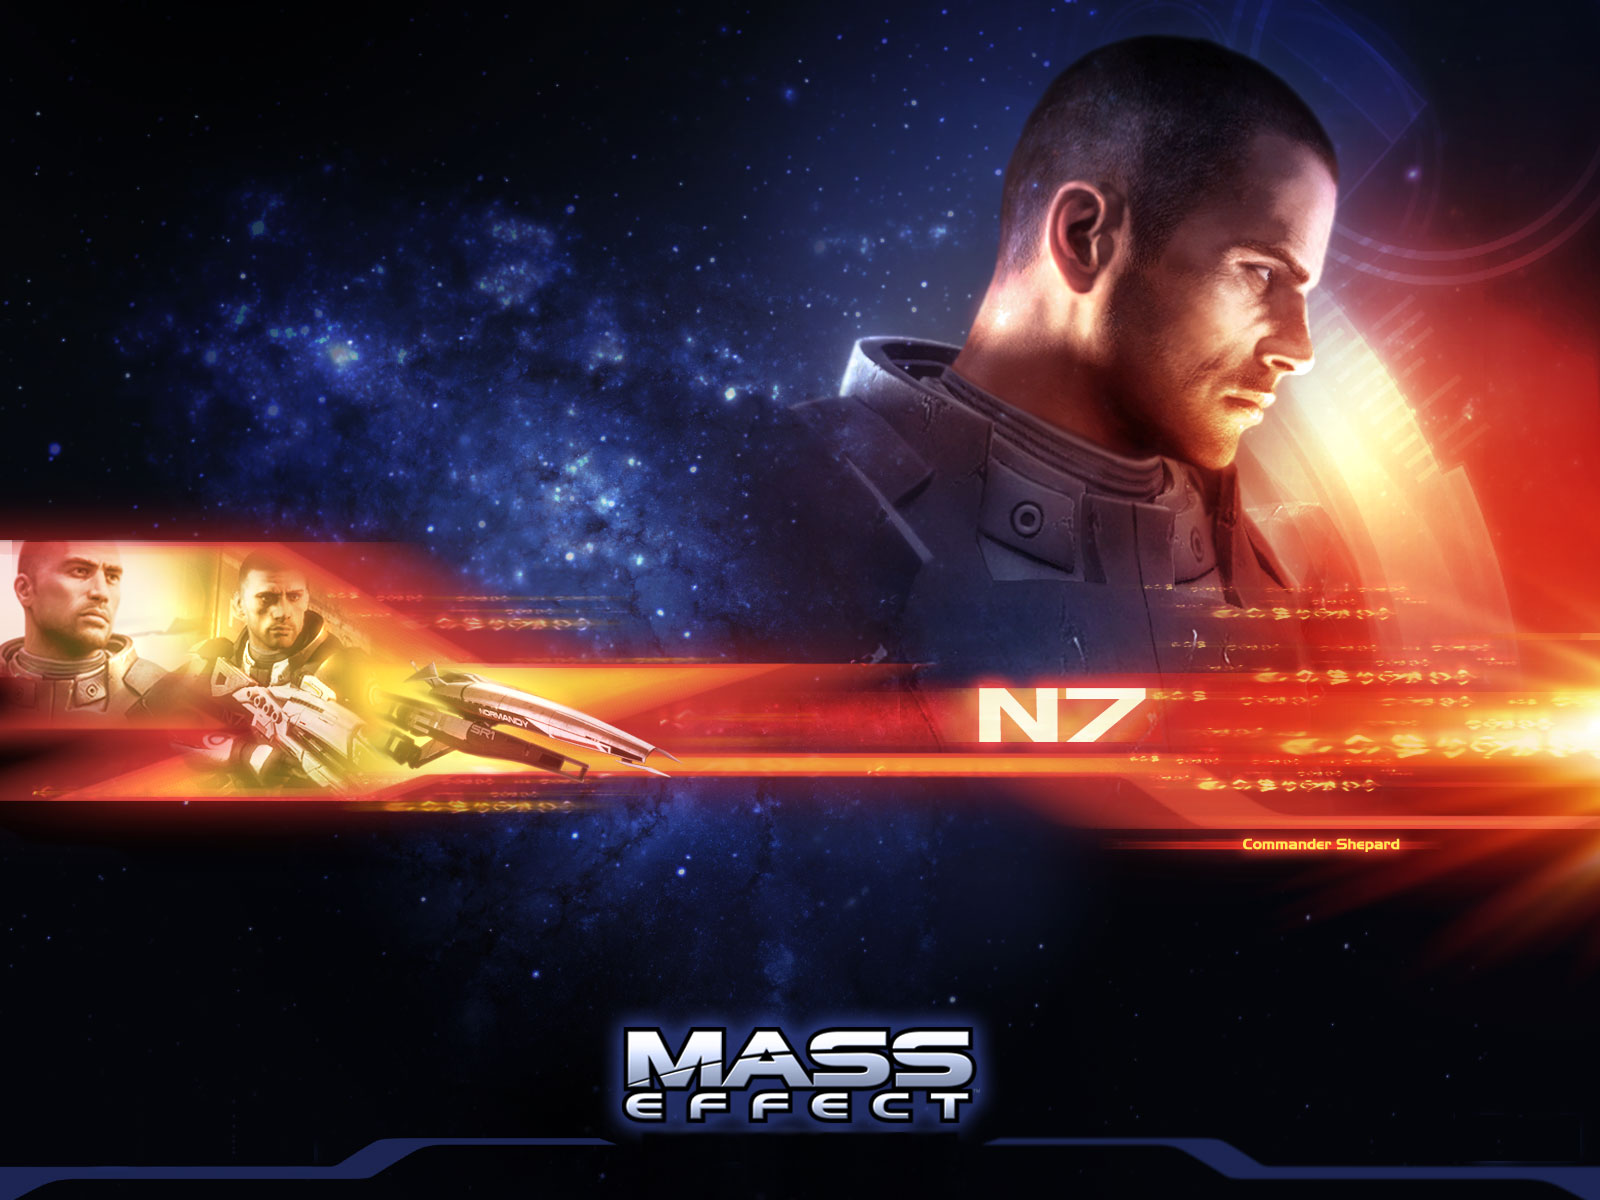 Free Download Mass Effect 3 Hd Wallpapers Mass Effect 3 Hd Wallpapers